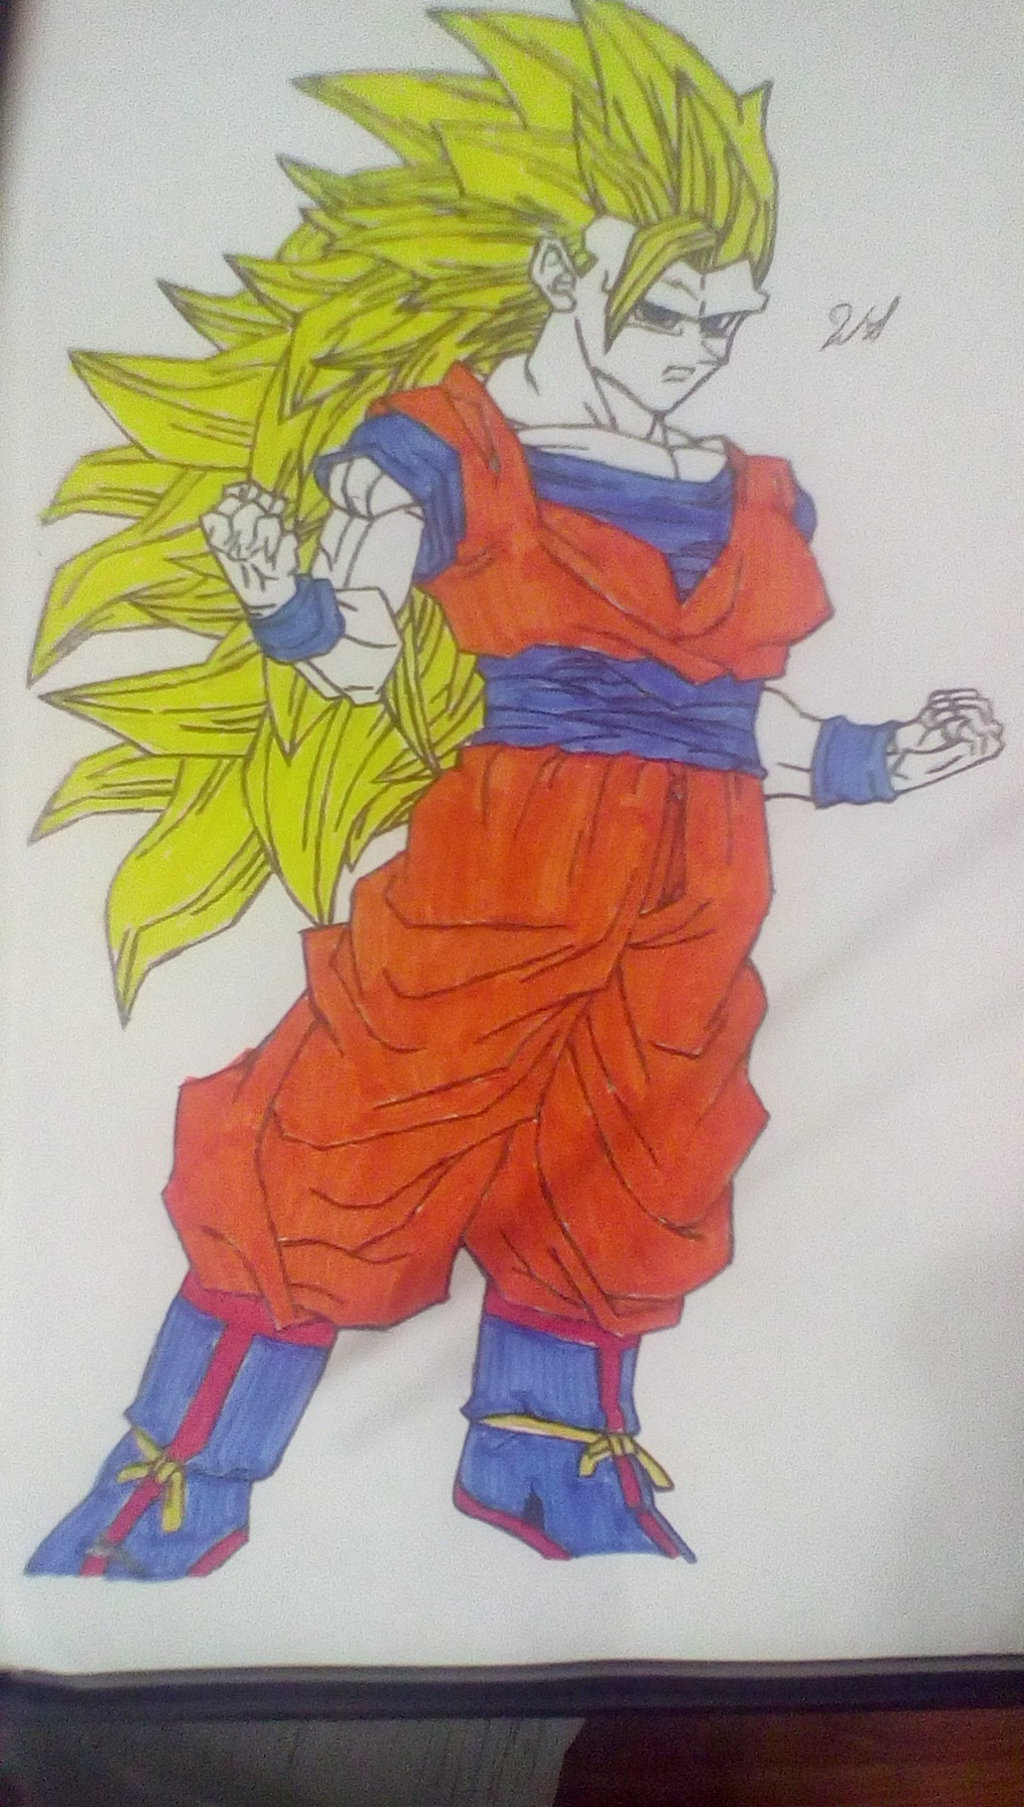 Ssj3 Goku By Mlgartwarrior